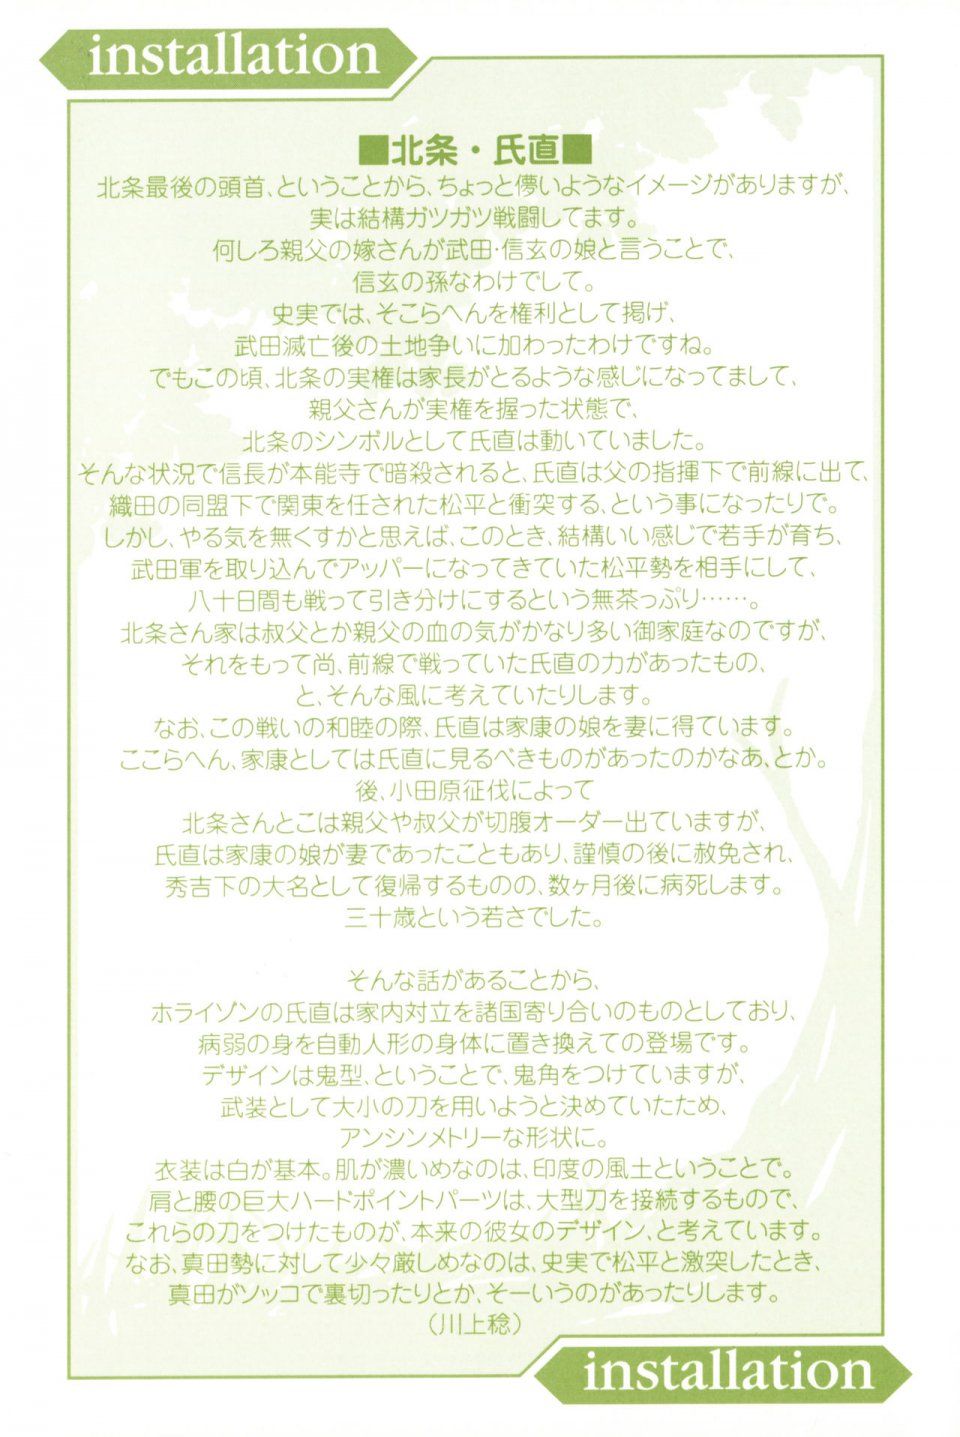 Kyoukai Senjou no Horizon LN Vol 11(5A) - Photo #4